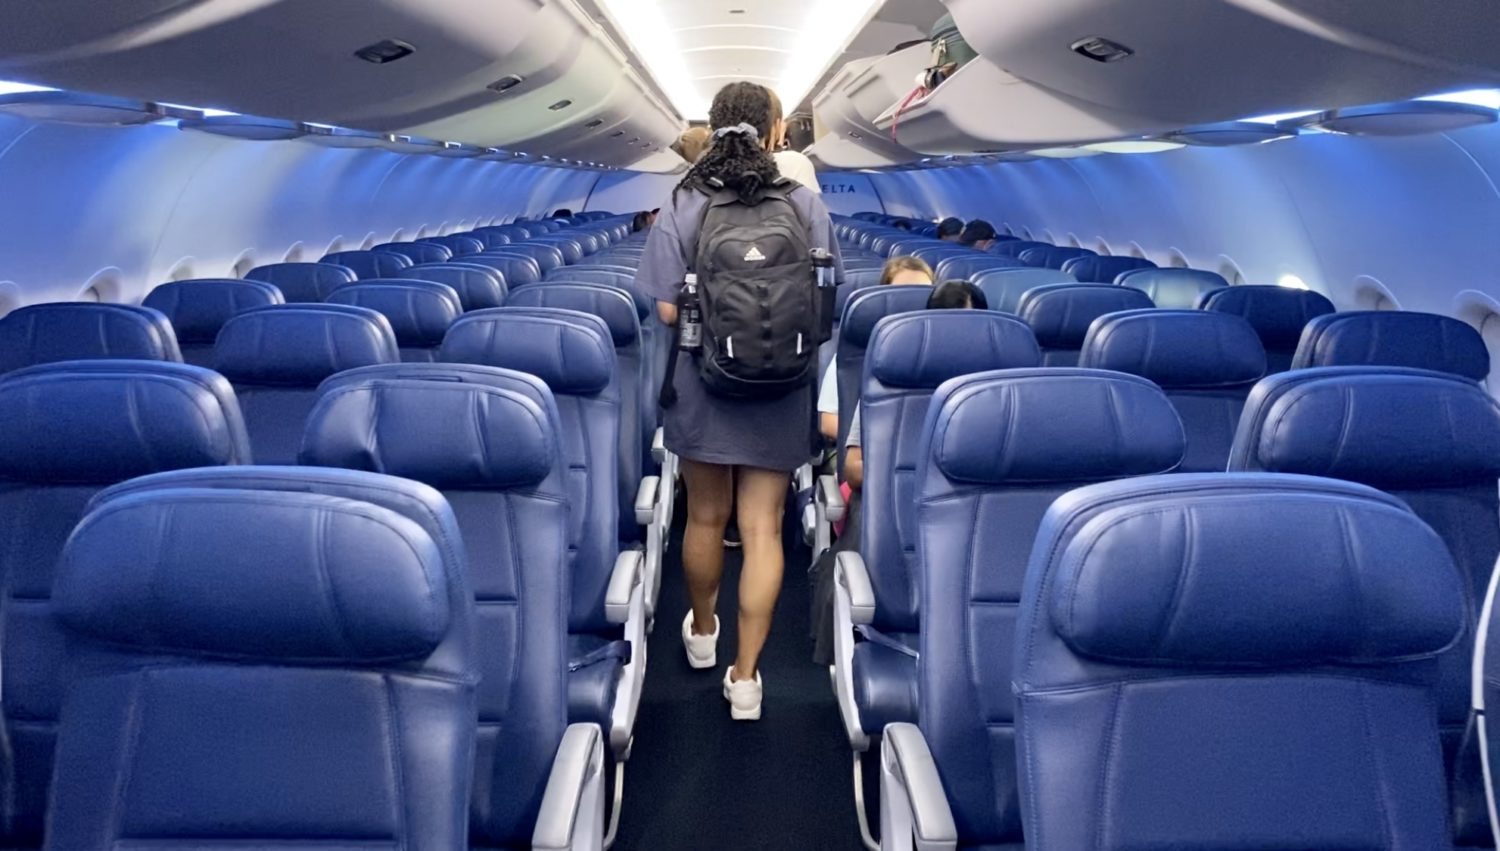 راكب سكران يتحرش بفتاة على متن رحلة شركة دلتا للطيران